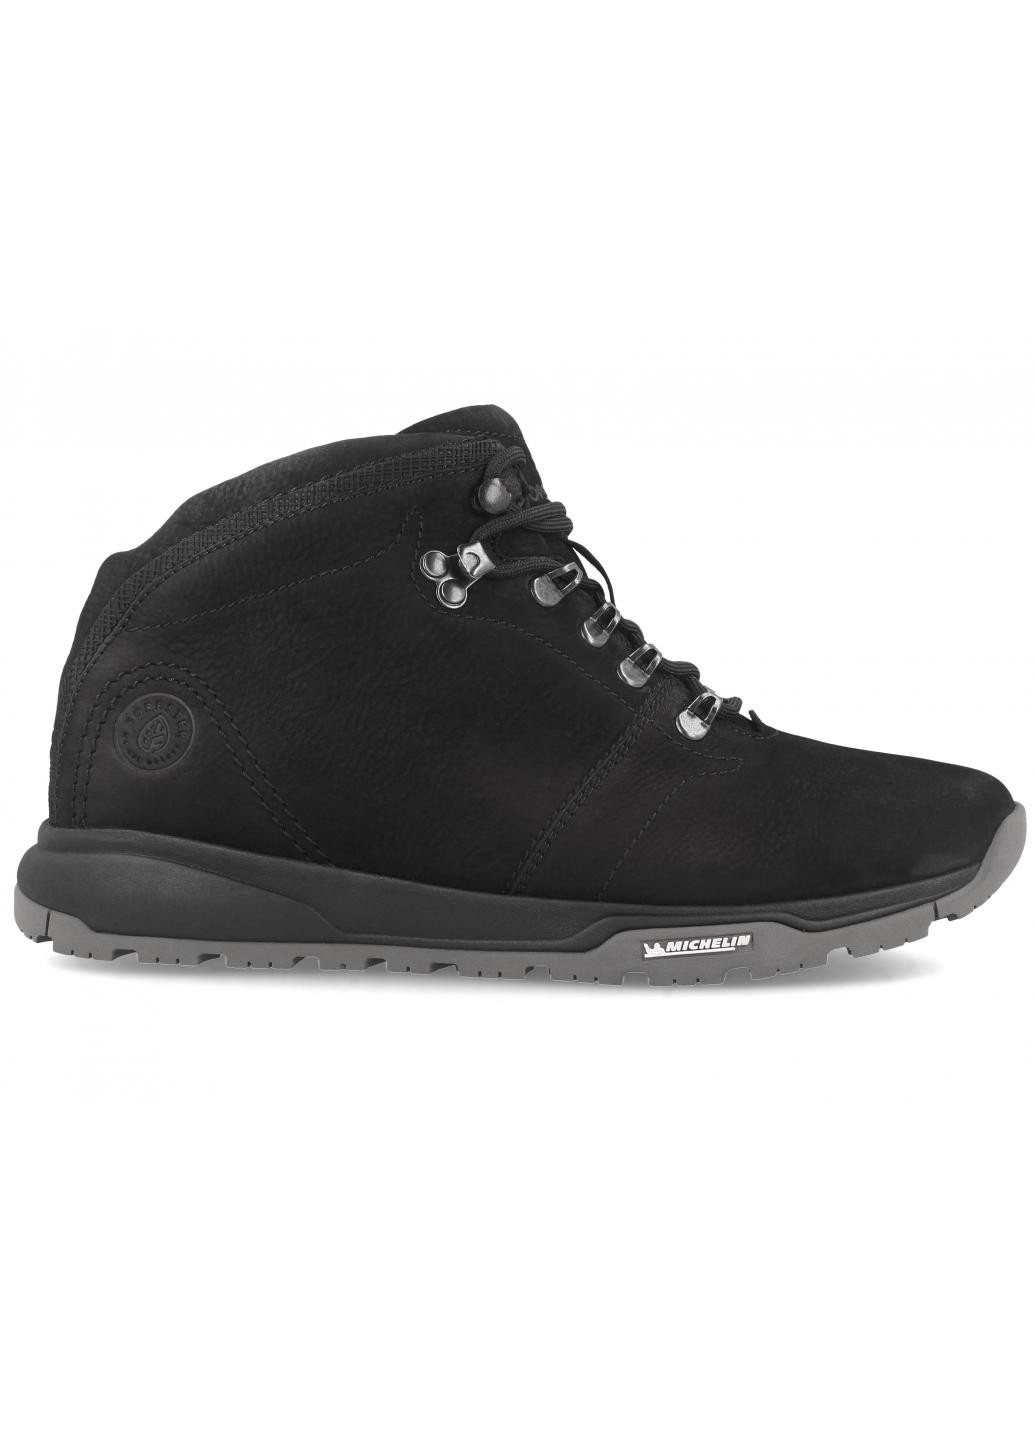 Черные зимние мужские ботинки tyres m8908-02 michelin sole Forester